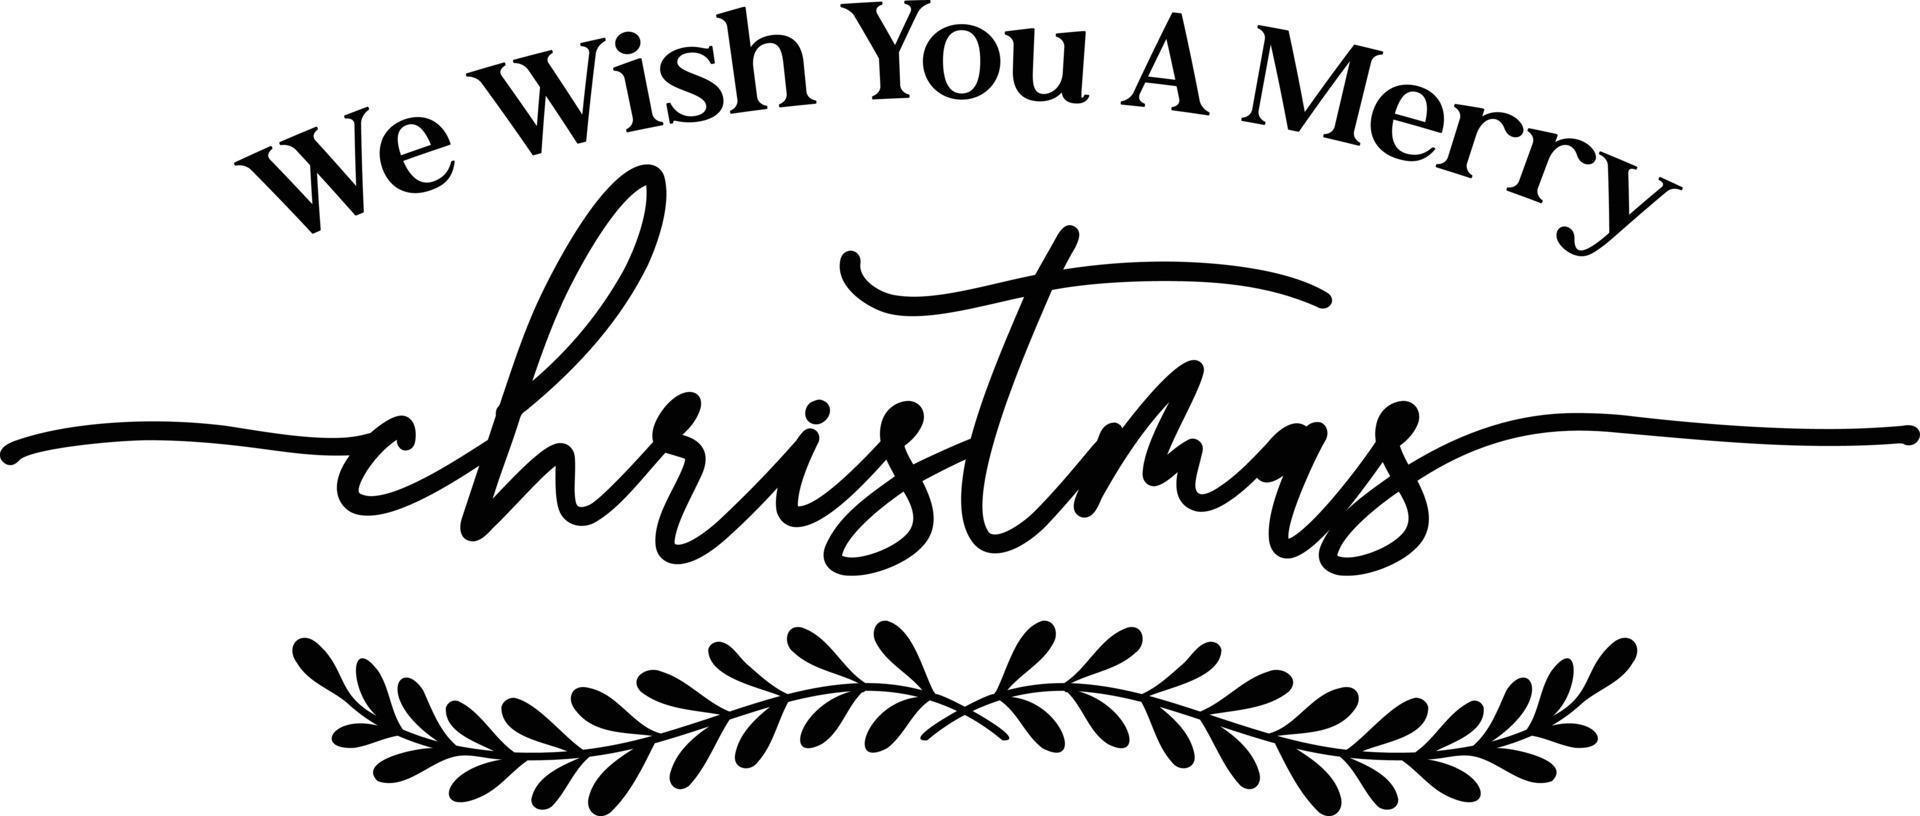 noi desiderio voi un' allegro Natale lettering e citazione illustrazione vettore